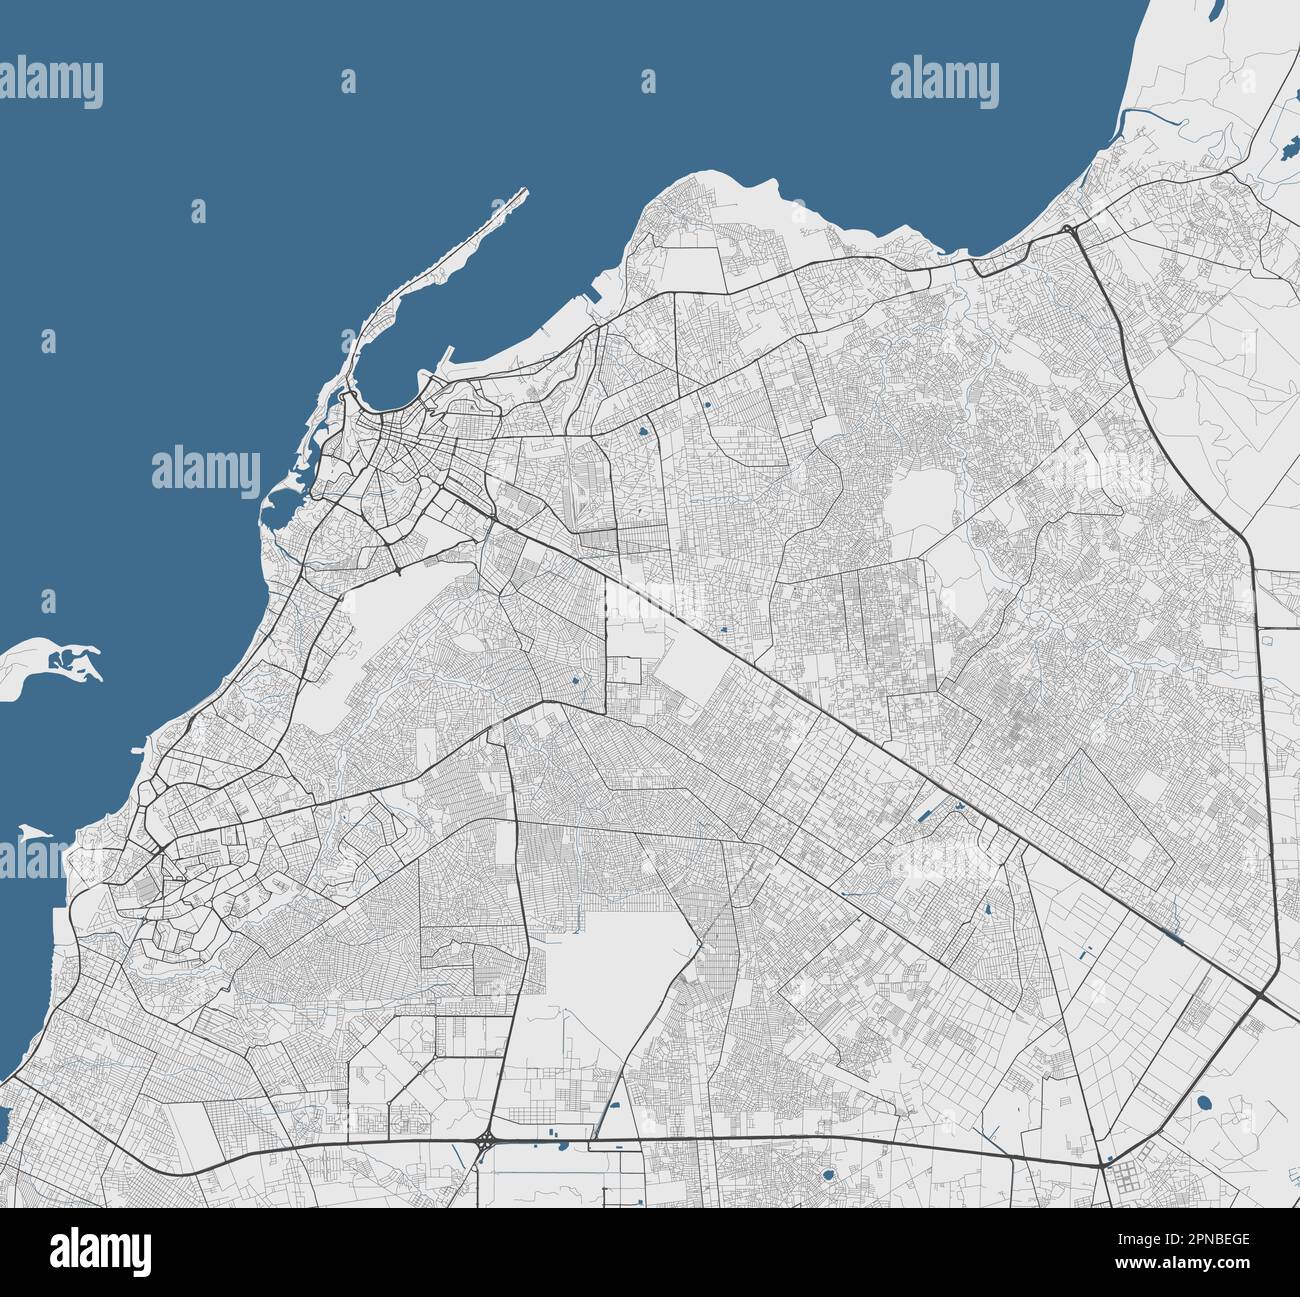 Mappa di Luanda, capitale dell'Angola. Mappa amministrativa comunale con edifici, fiumi e strade, parchi e ferrovie. Illustrazione vettoriale. Illustrazione Vettoriale